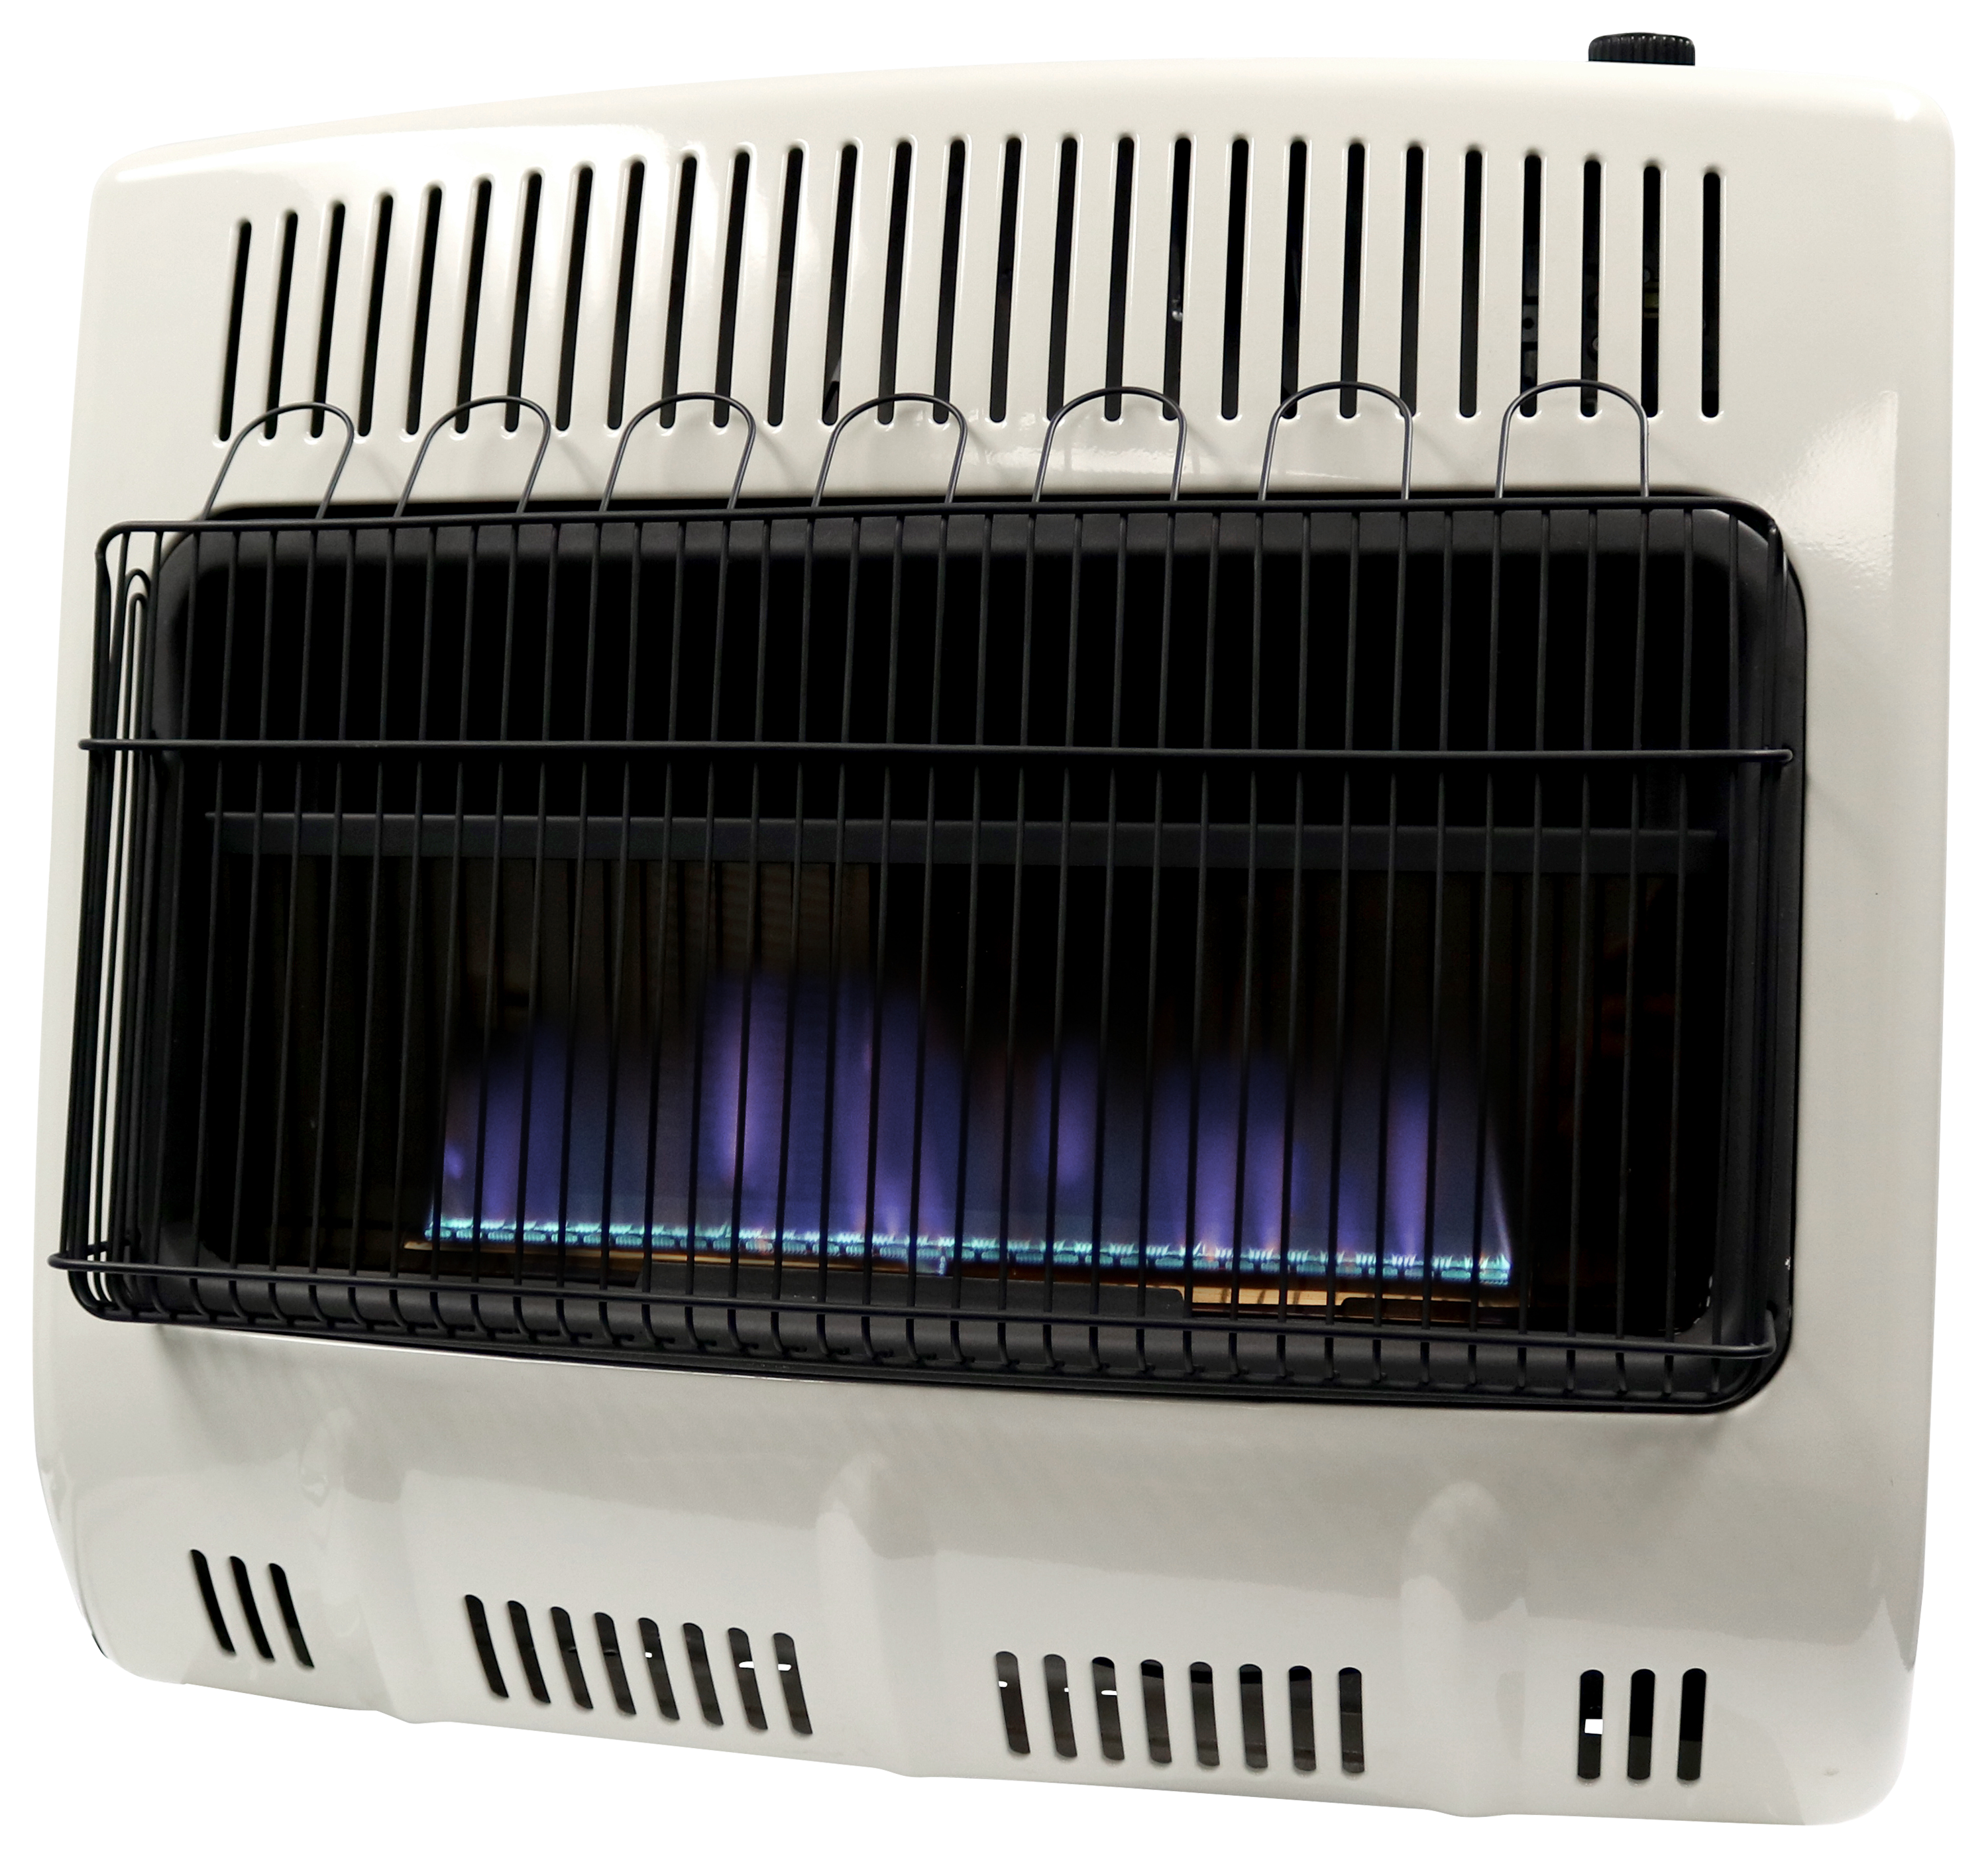 Mr. Heater 30,000 BTU Vent-Free Blue Flame Propane Heater